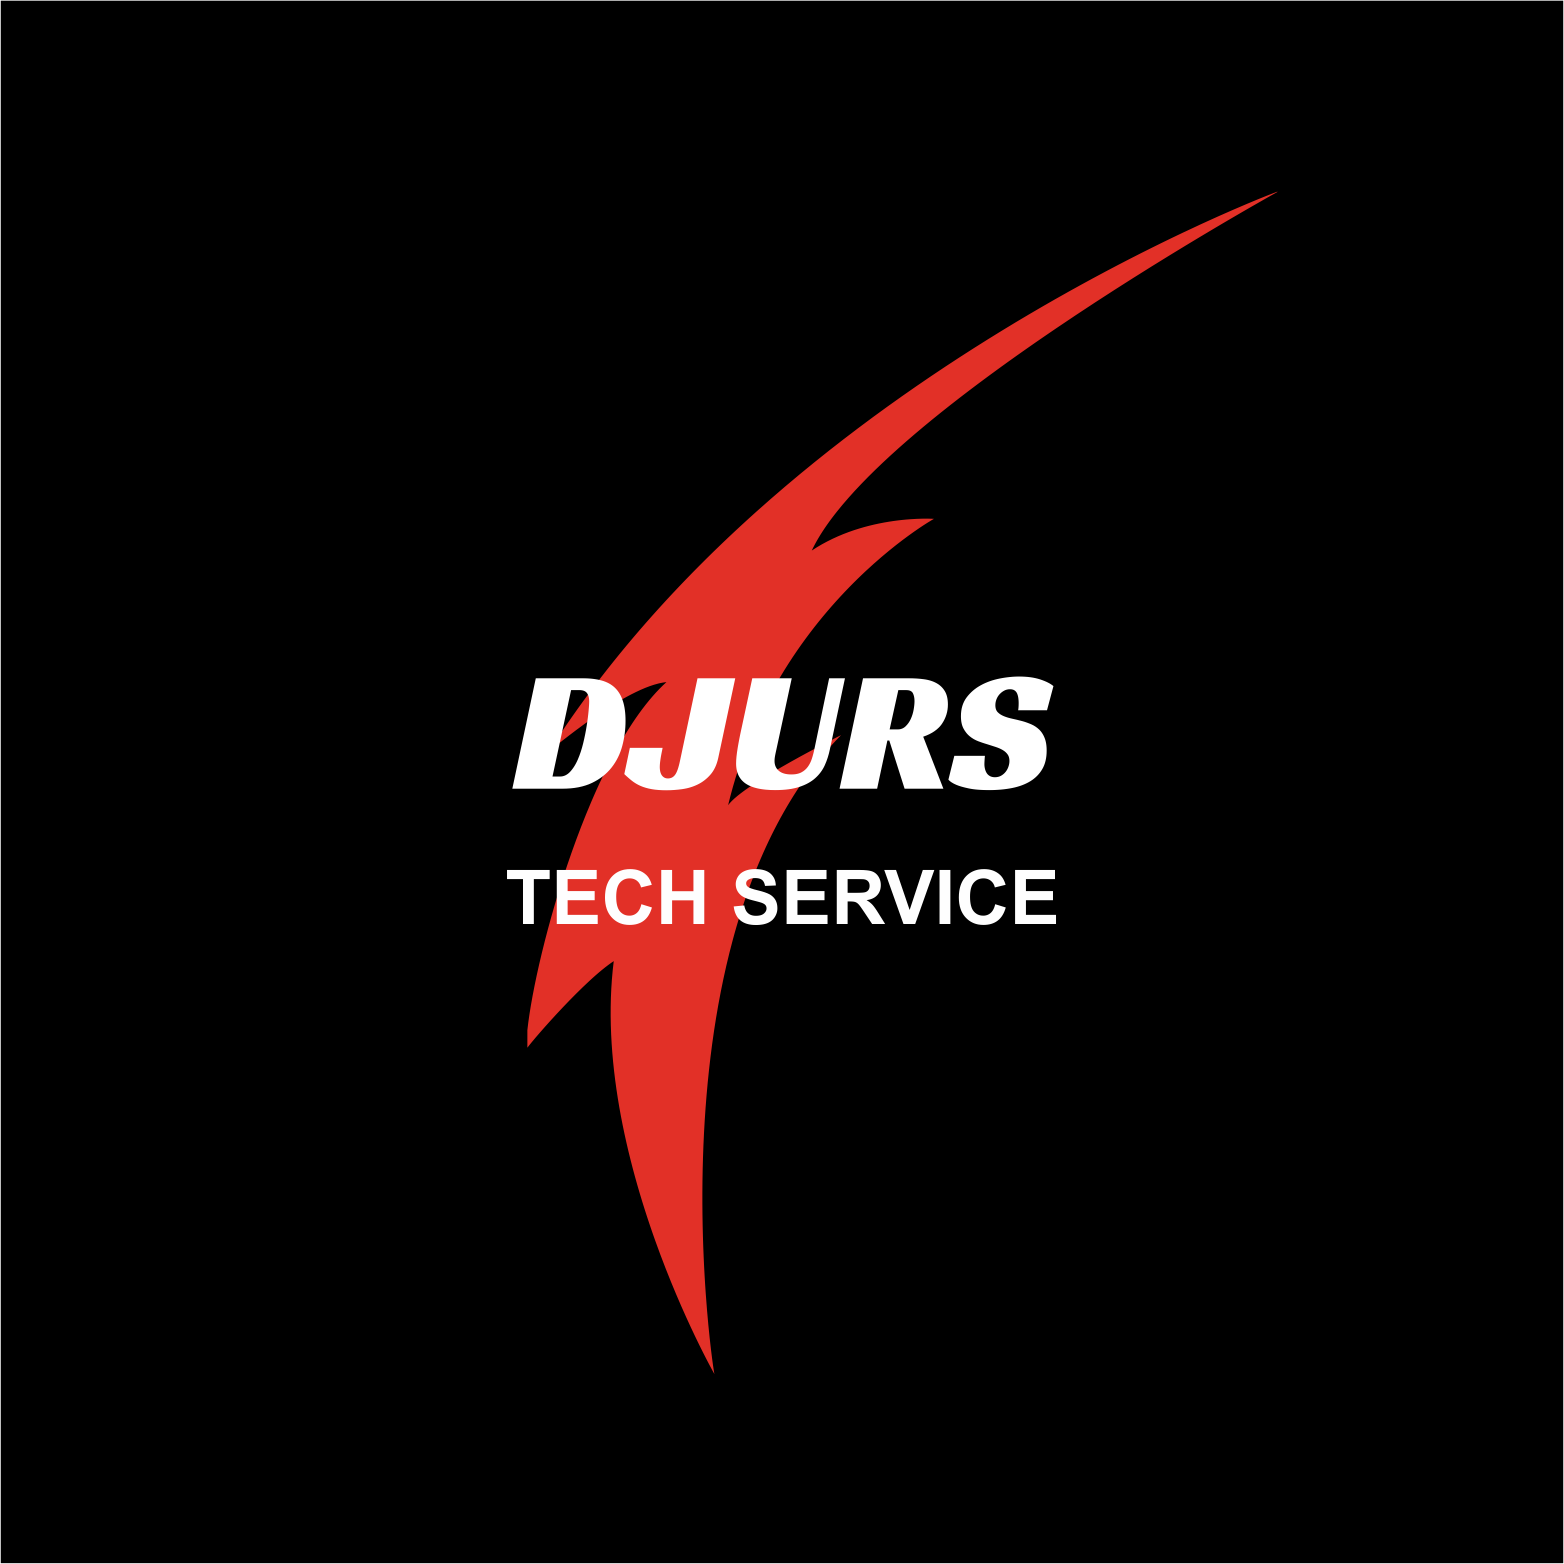 Djurs Tech Service